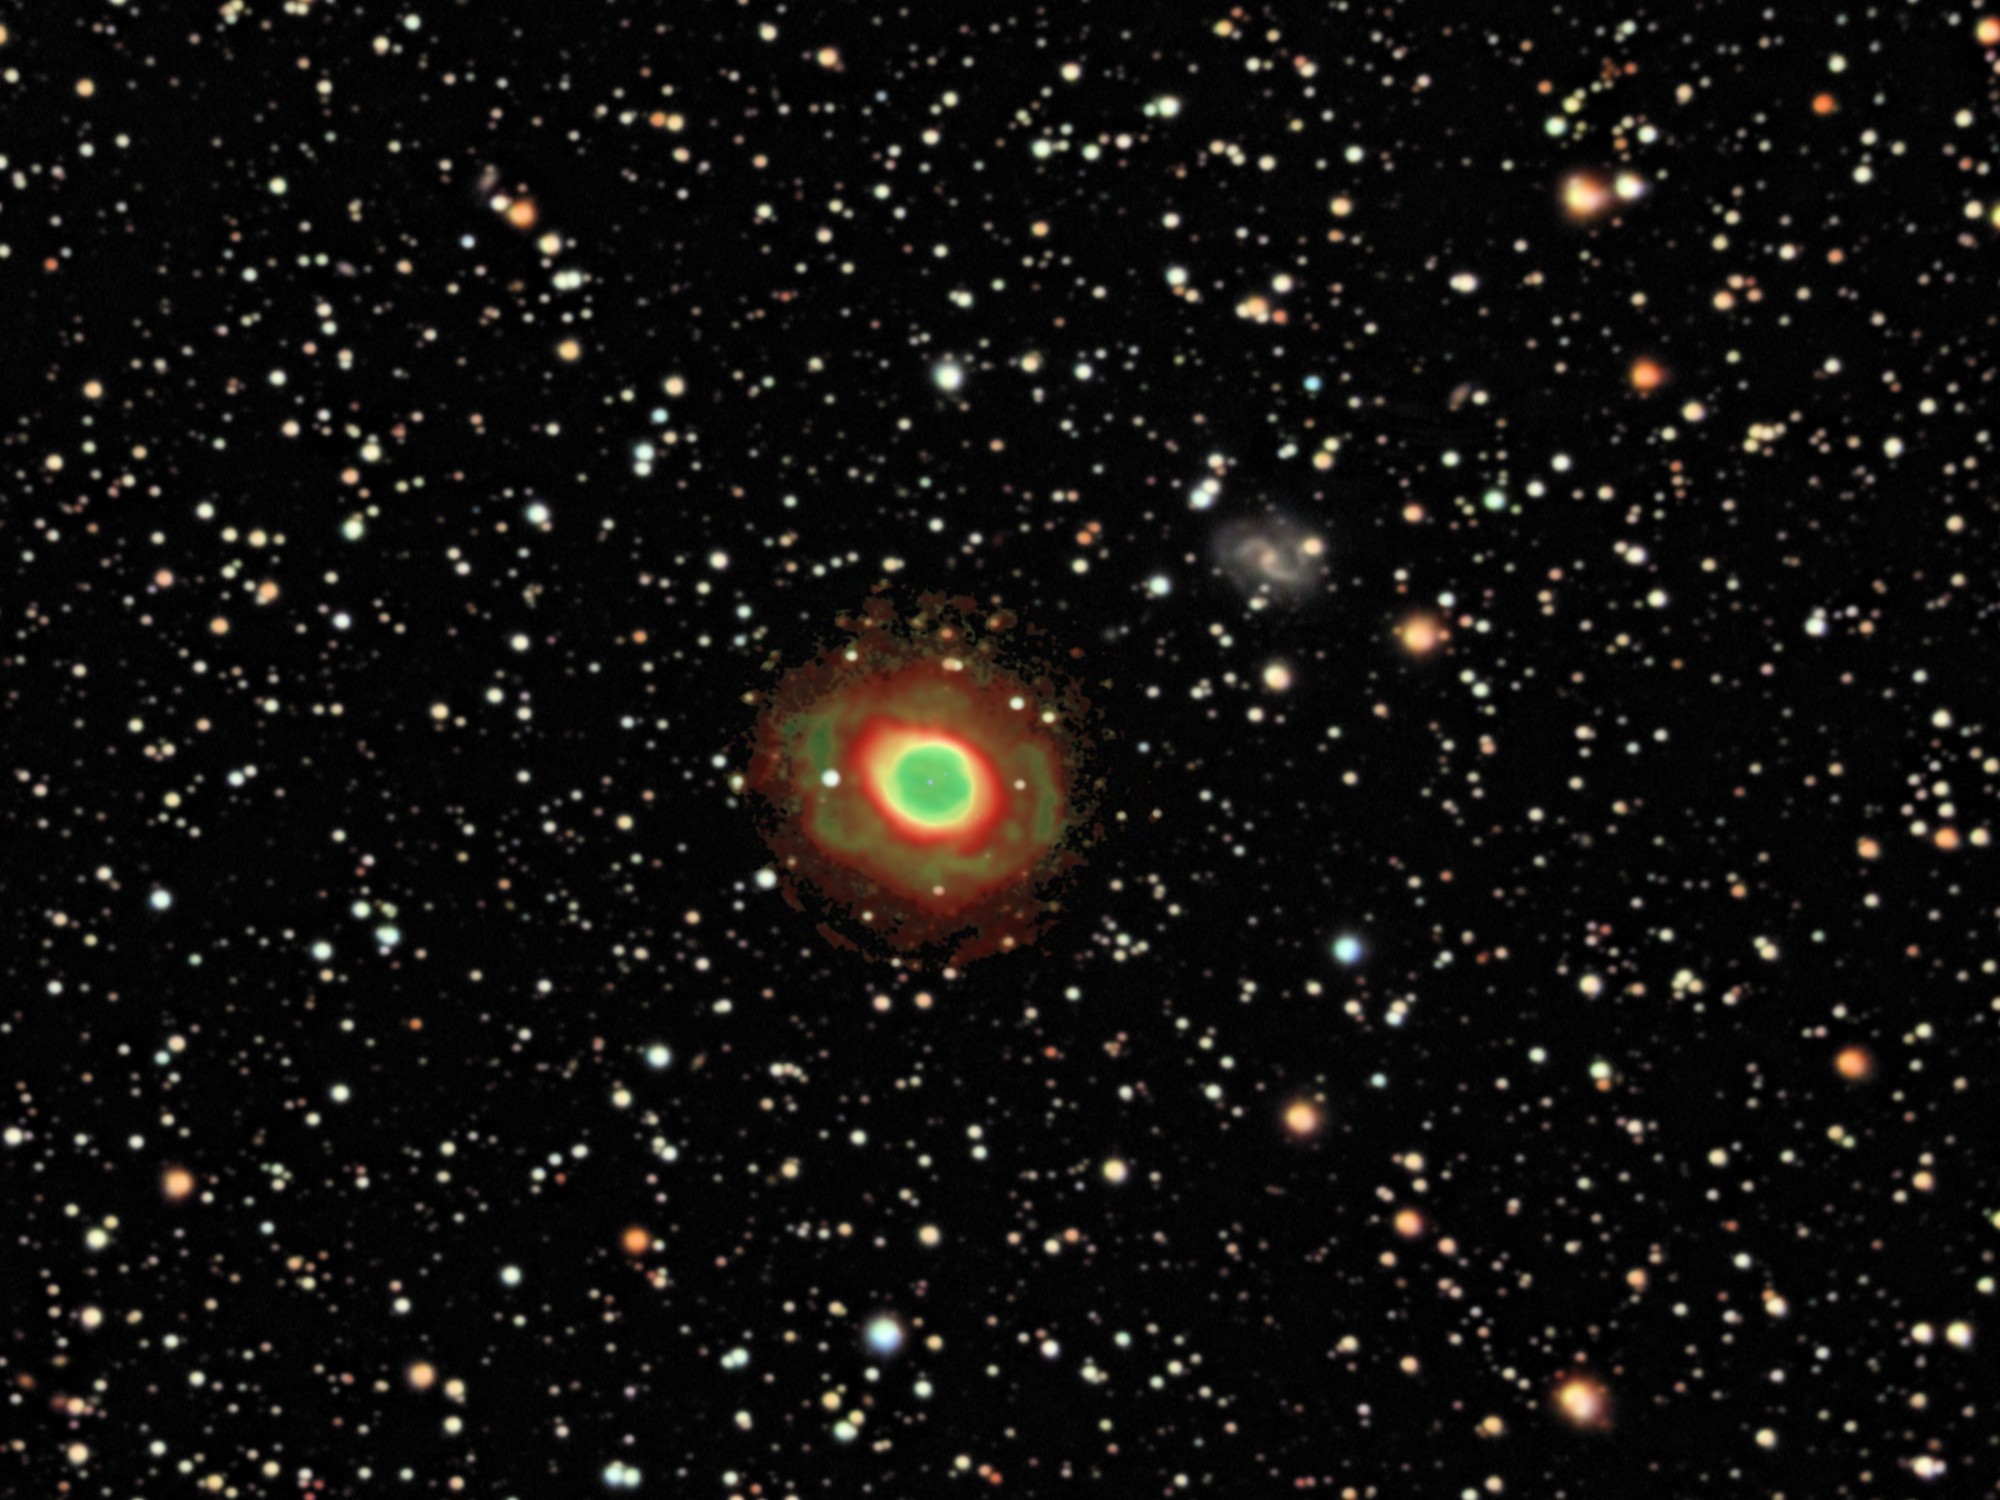 NGC 6720